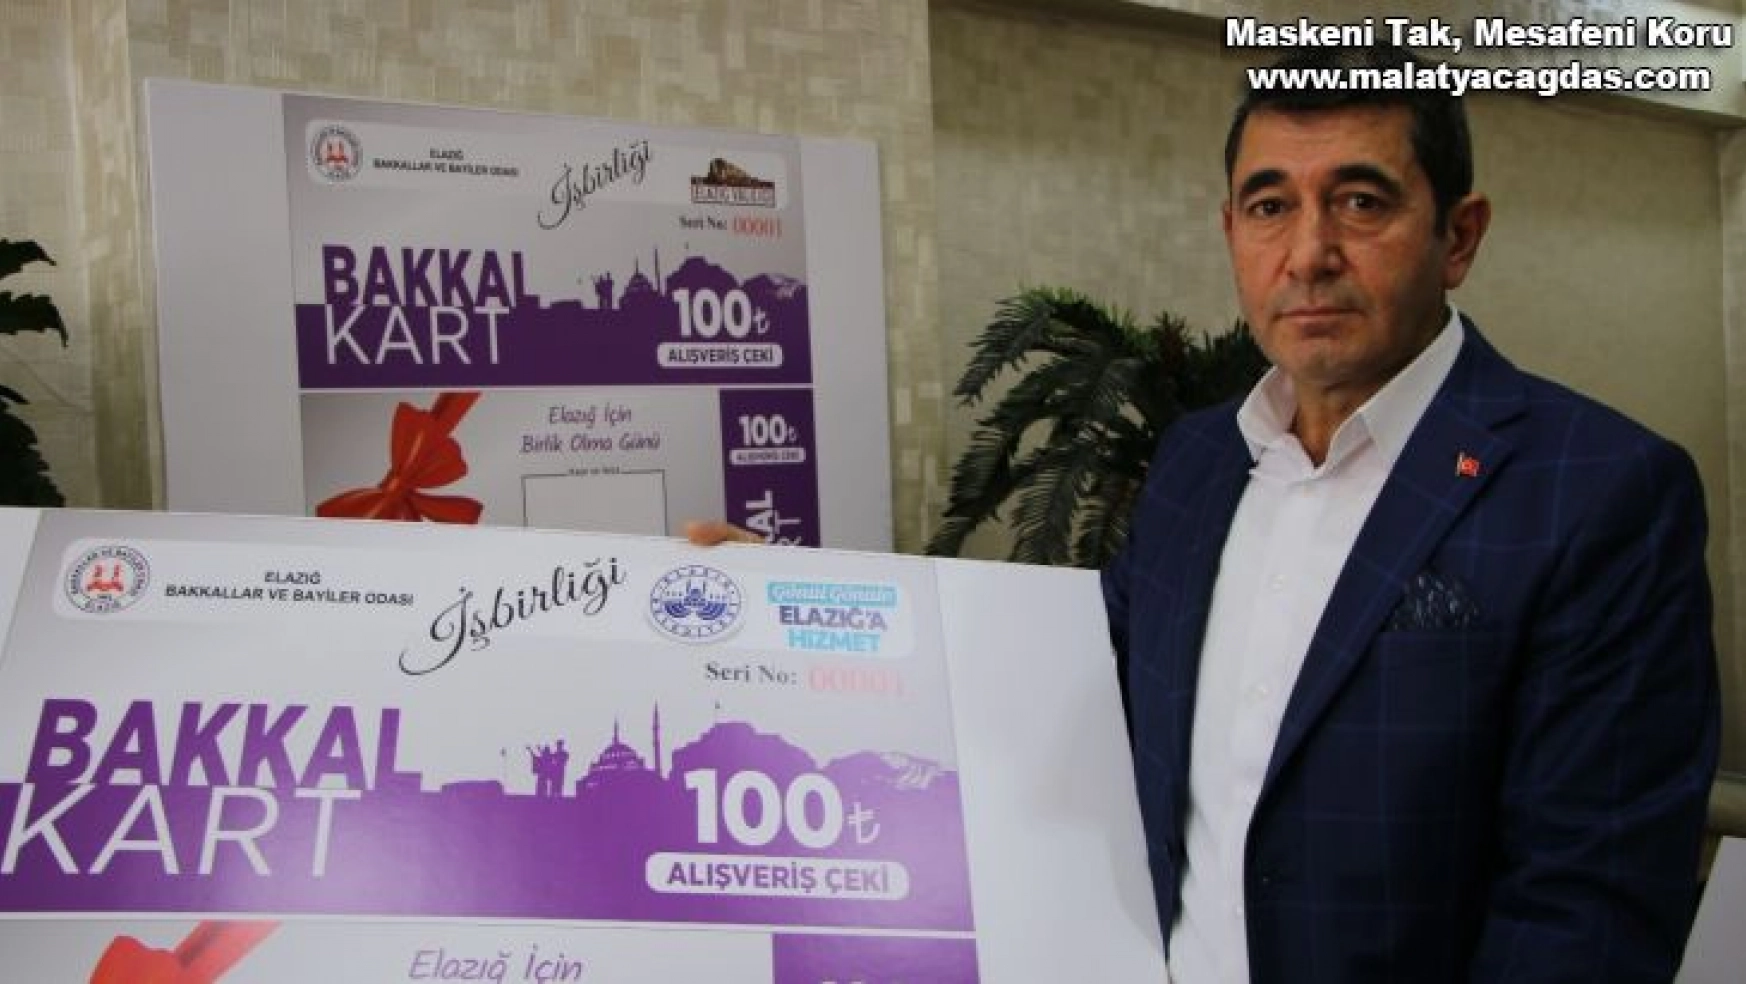 Elazığ'da yerel esnafa 'Bakkal Kart' desteği